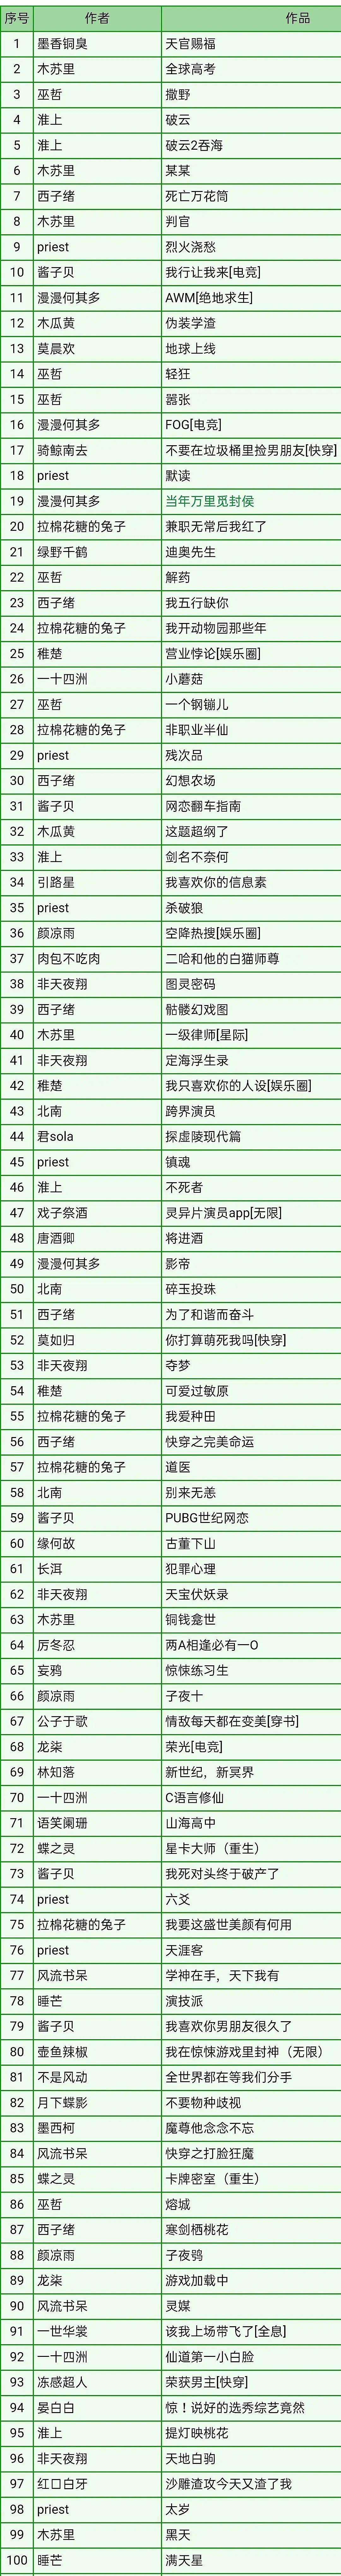 前十大小说网站_肉小说网站排行榜前10名_小说网站排名前十